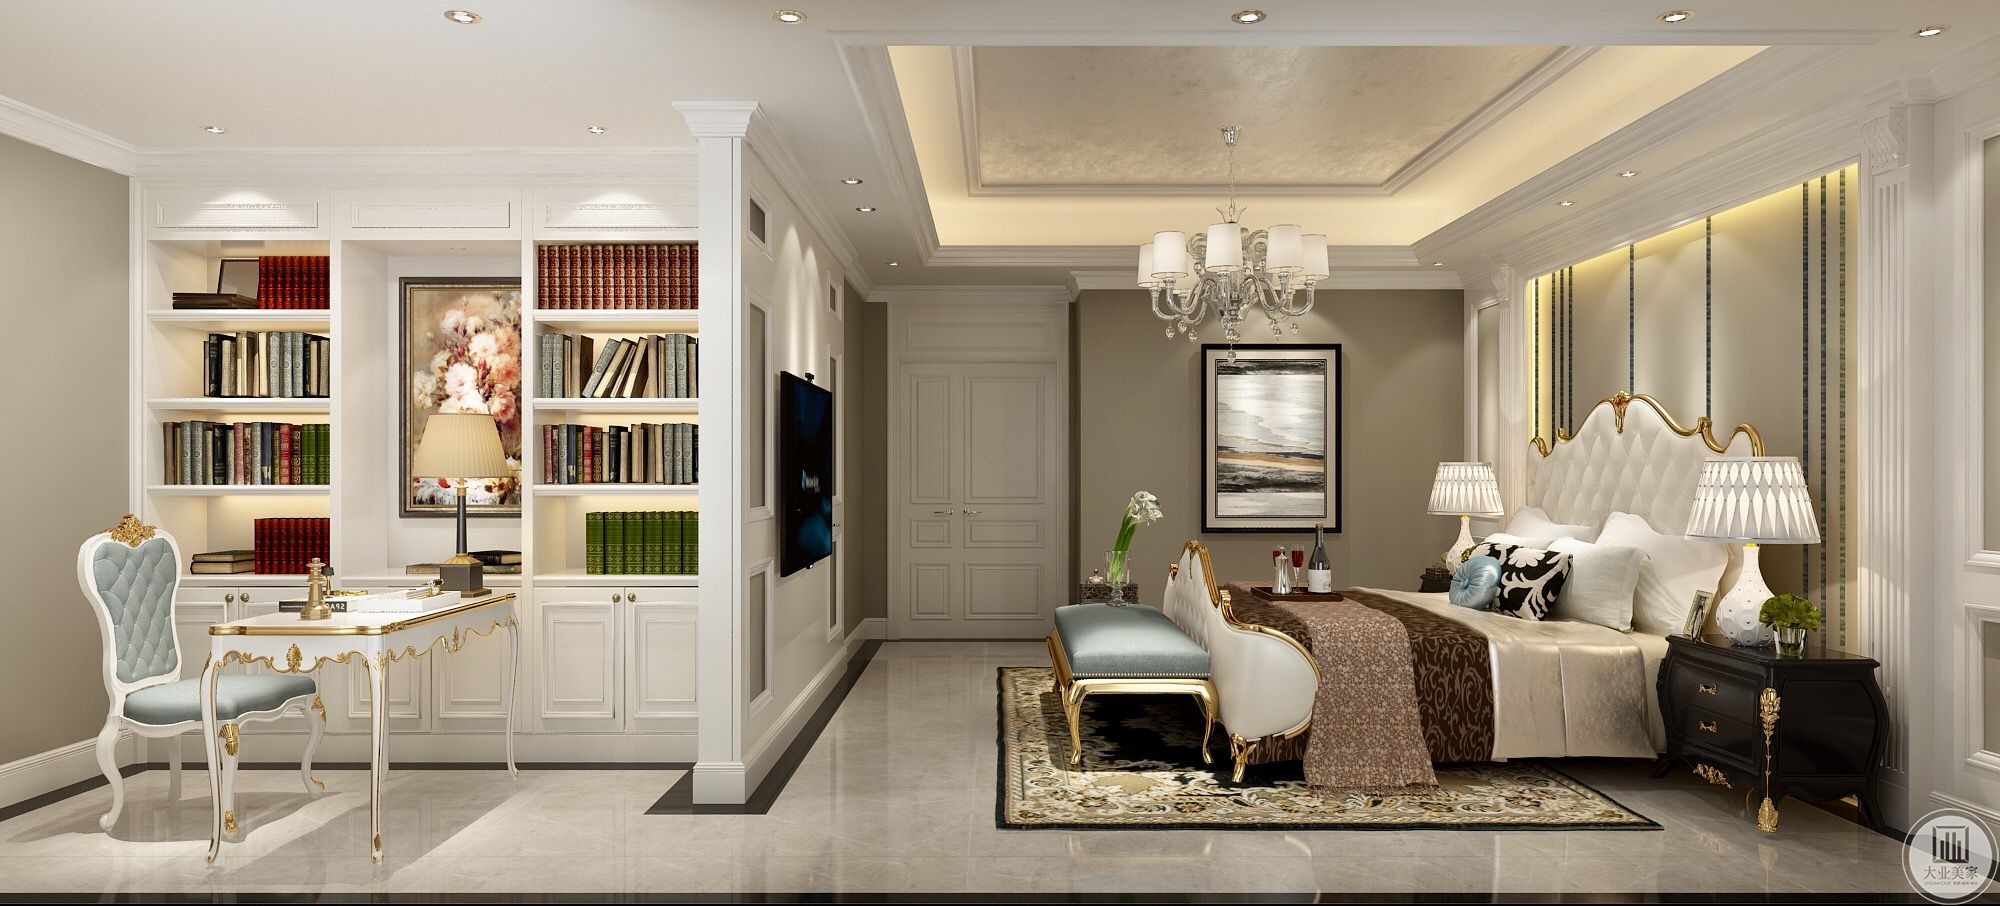 卧室整体效果         主卧是套间的设计，开放式的书房与卧室结合，非常舒适的居住方式，书房使用了纯白色家具。       